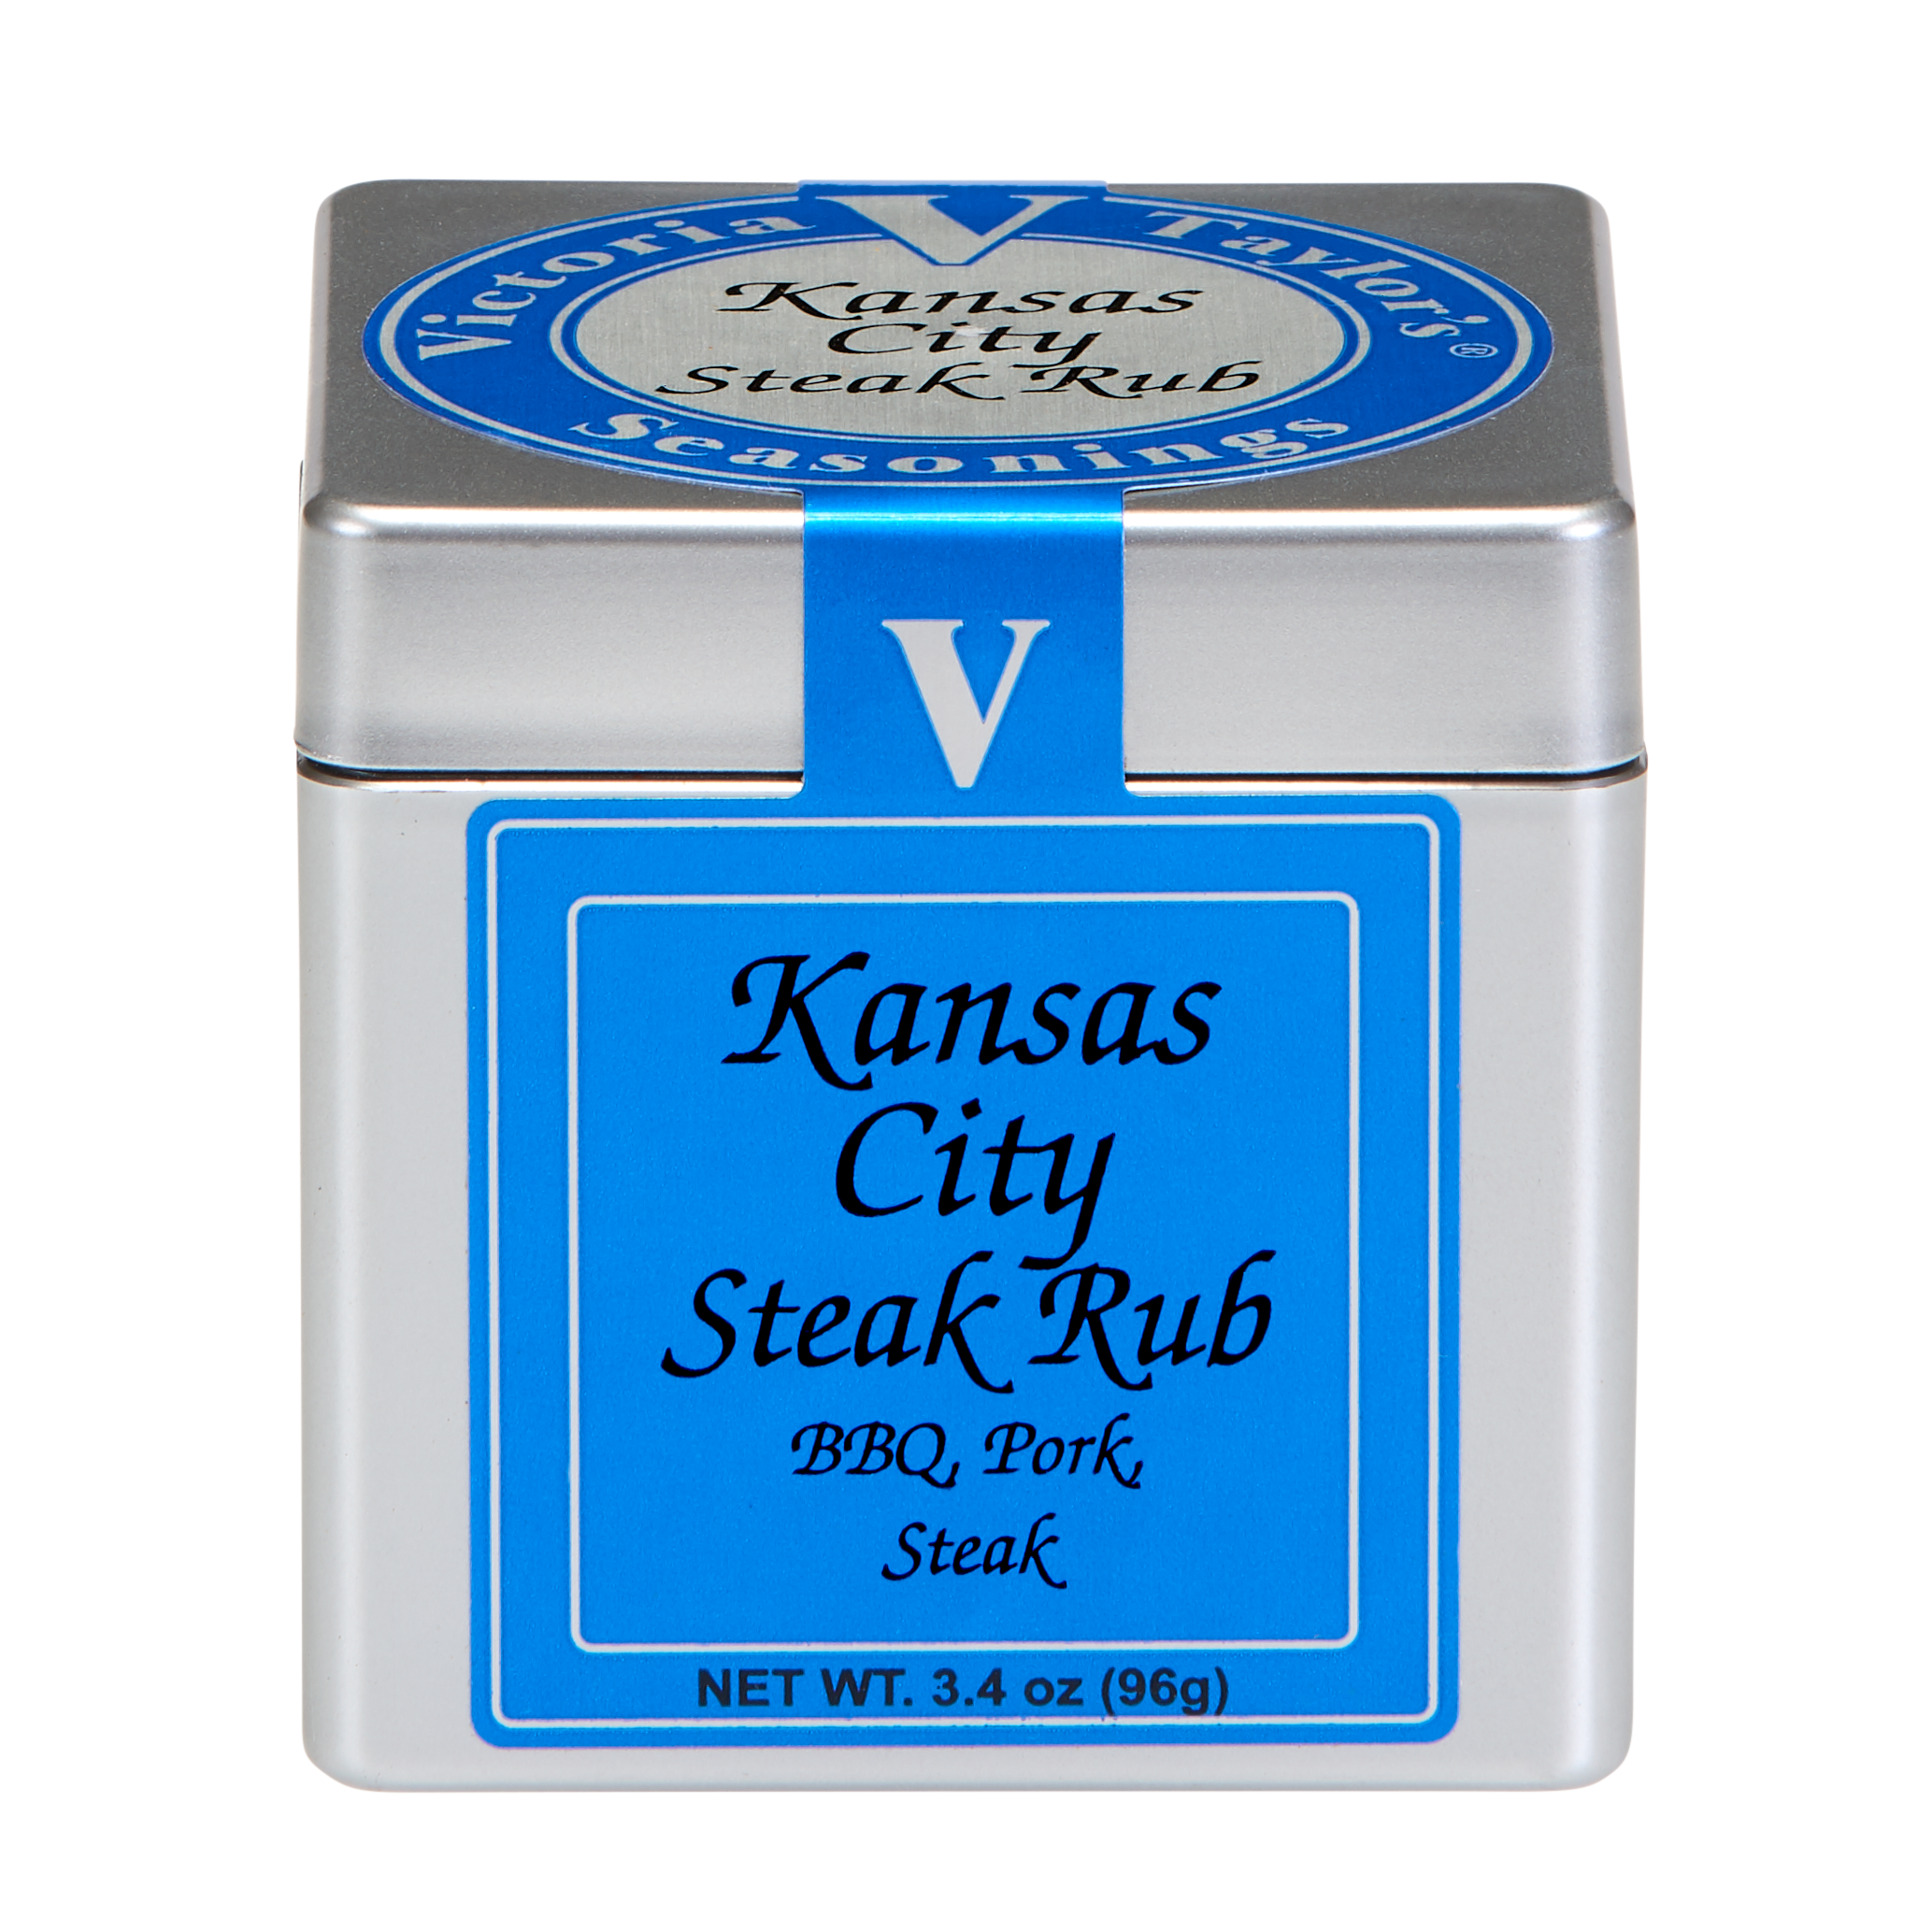 Original Kansas City Steak Seasoning